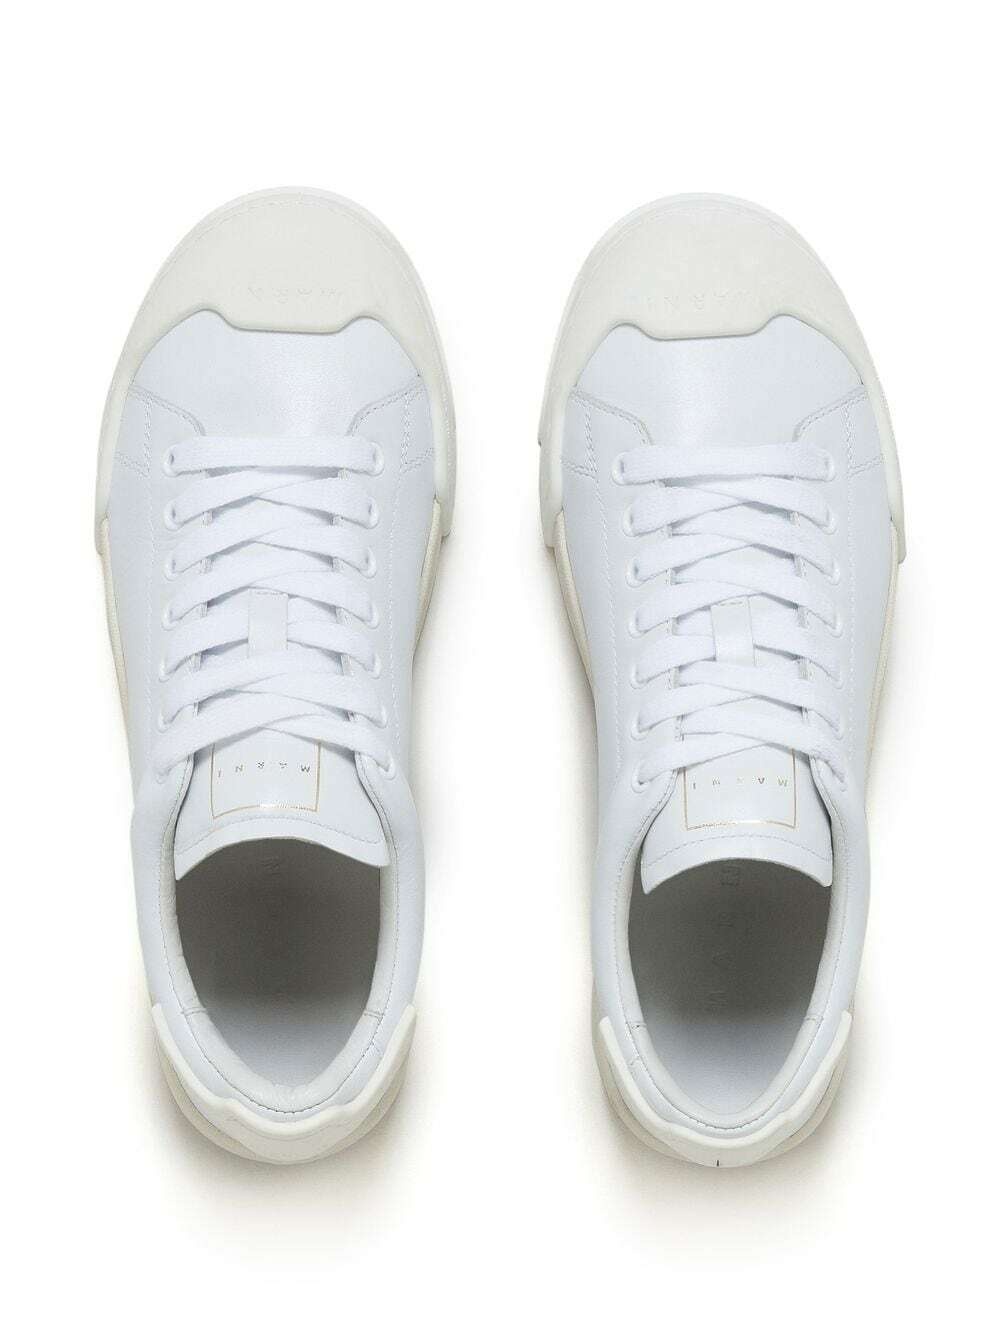 MARNI - Dada Bumper Leather Sneakers Marni